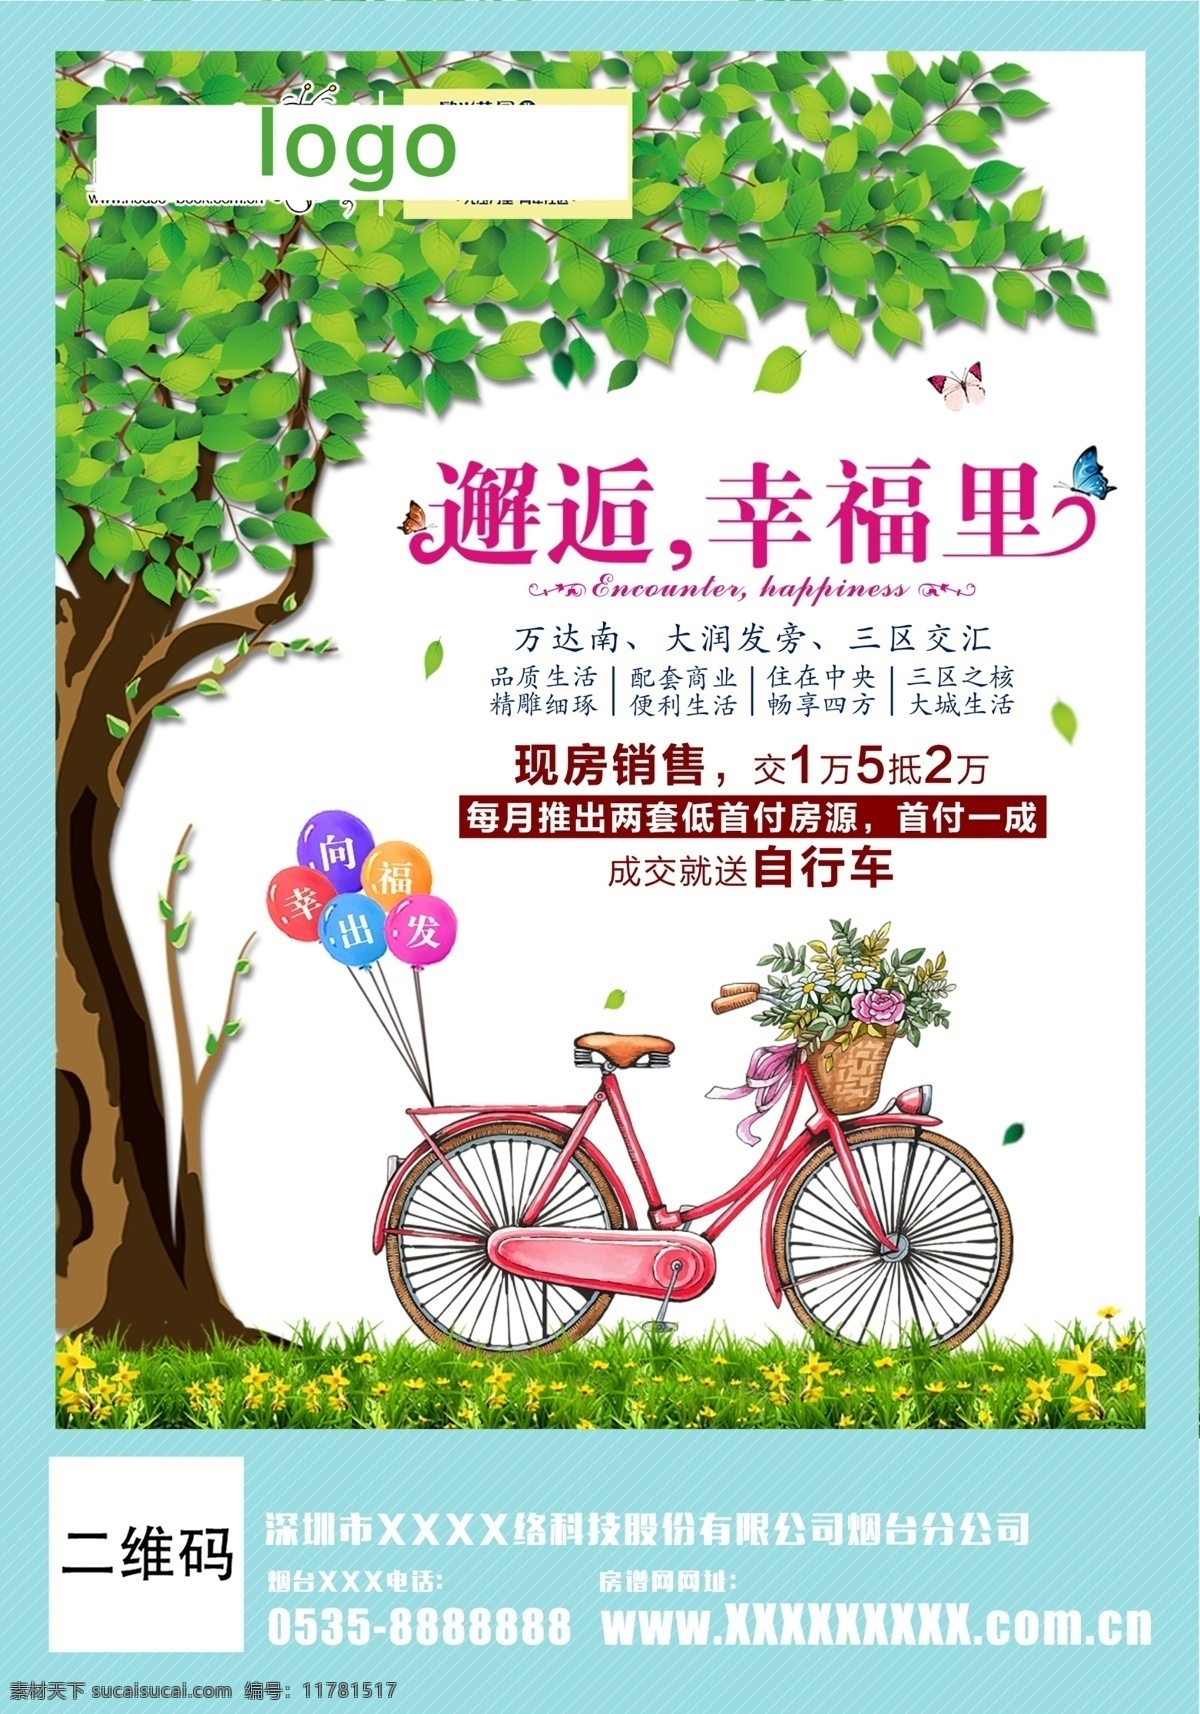 房地产广告 邂逅幸福里 地产单页 宣传海报 邂逅 幸福里 向幸福出发 绿色大树 小清新 自行车